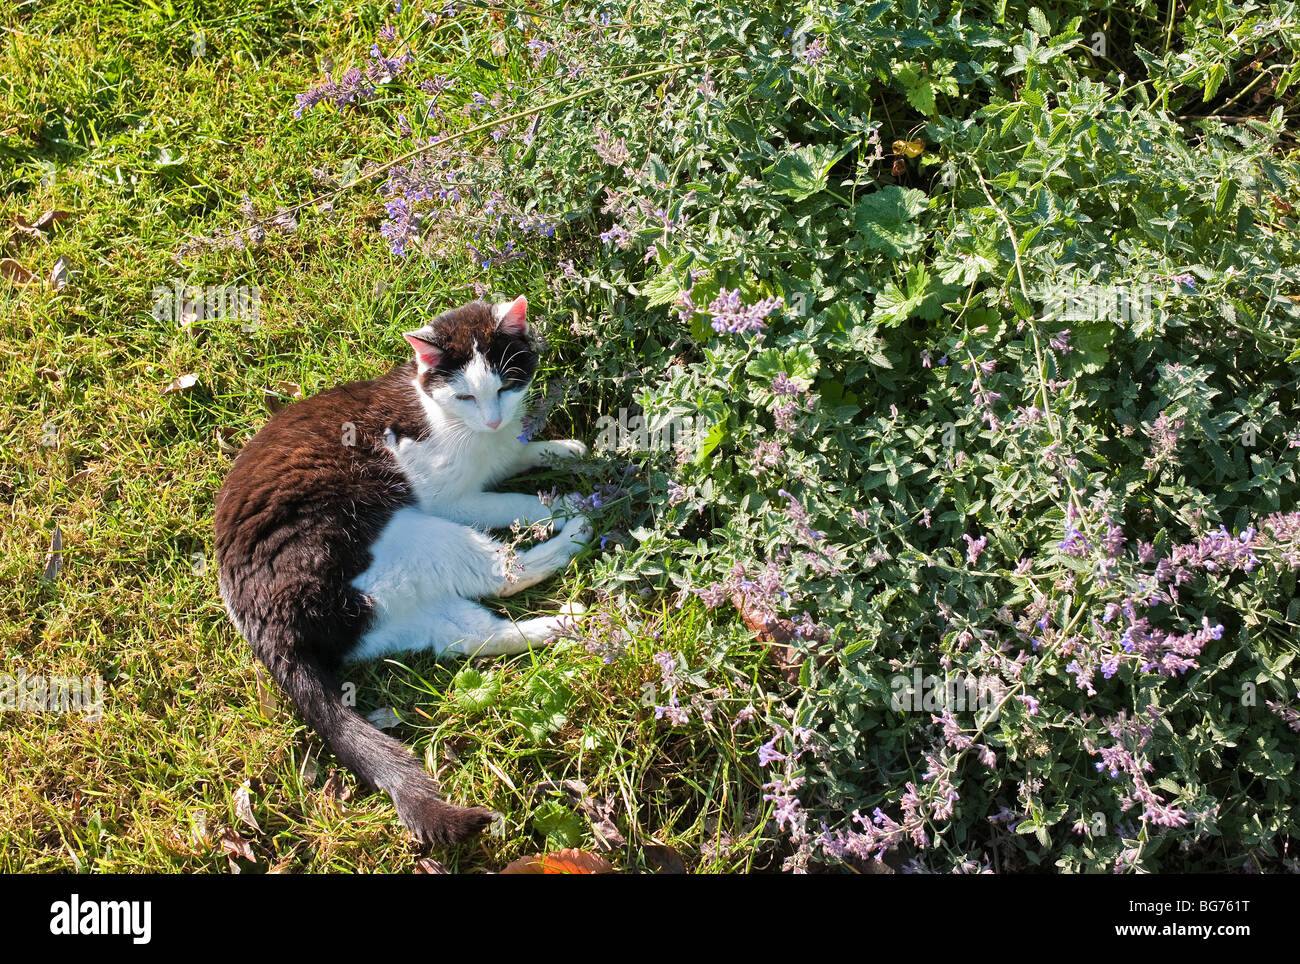 Bianco e nero cat scaldandosi accanto a nepeta o cat mint pianta in un giardino inglese Foto Stock